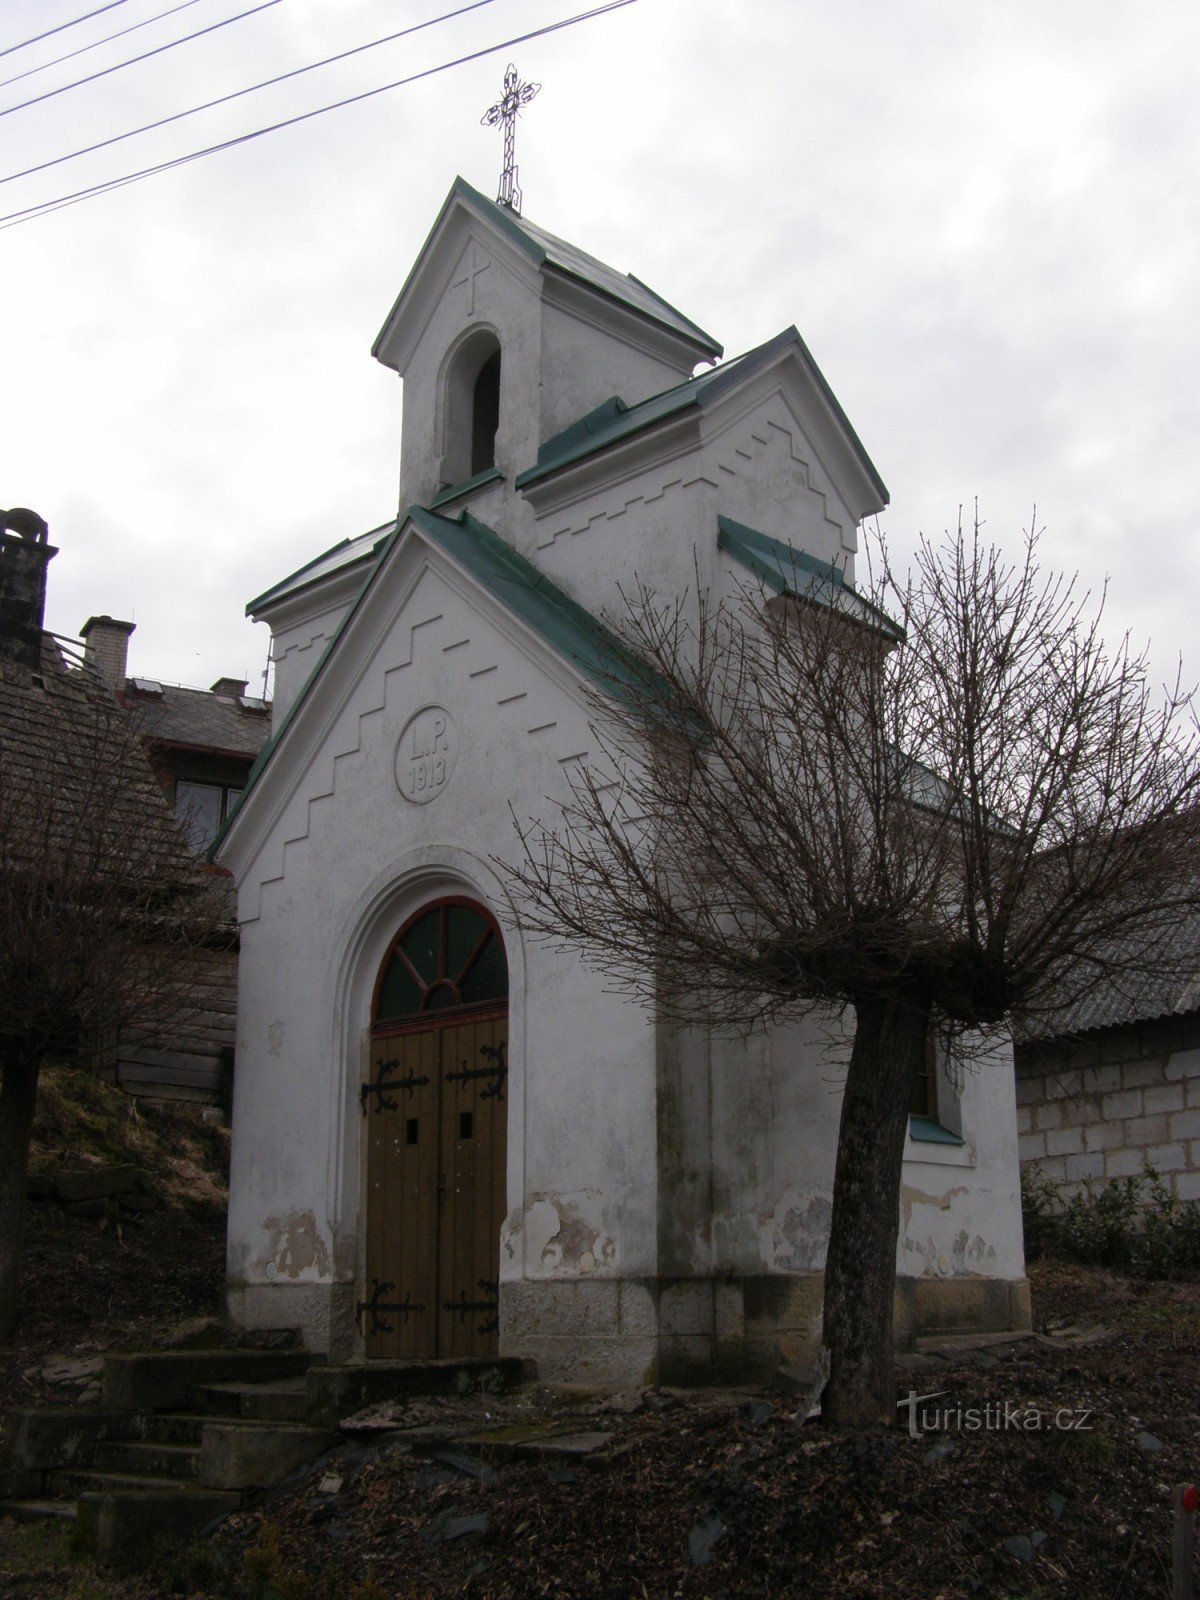 Doubravice - chapel